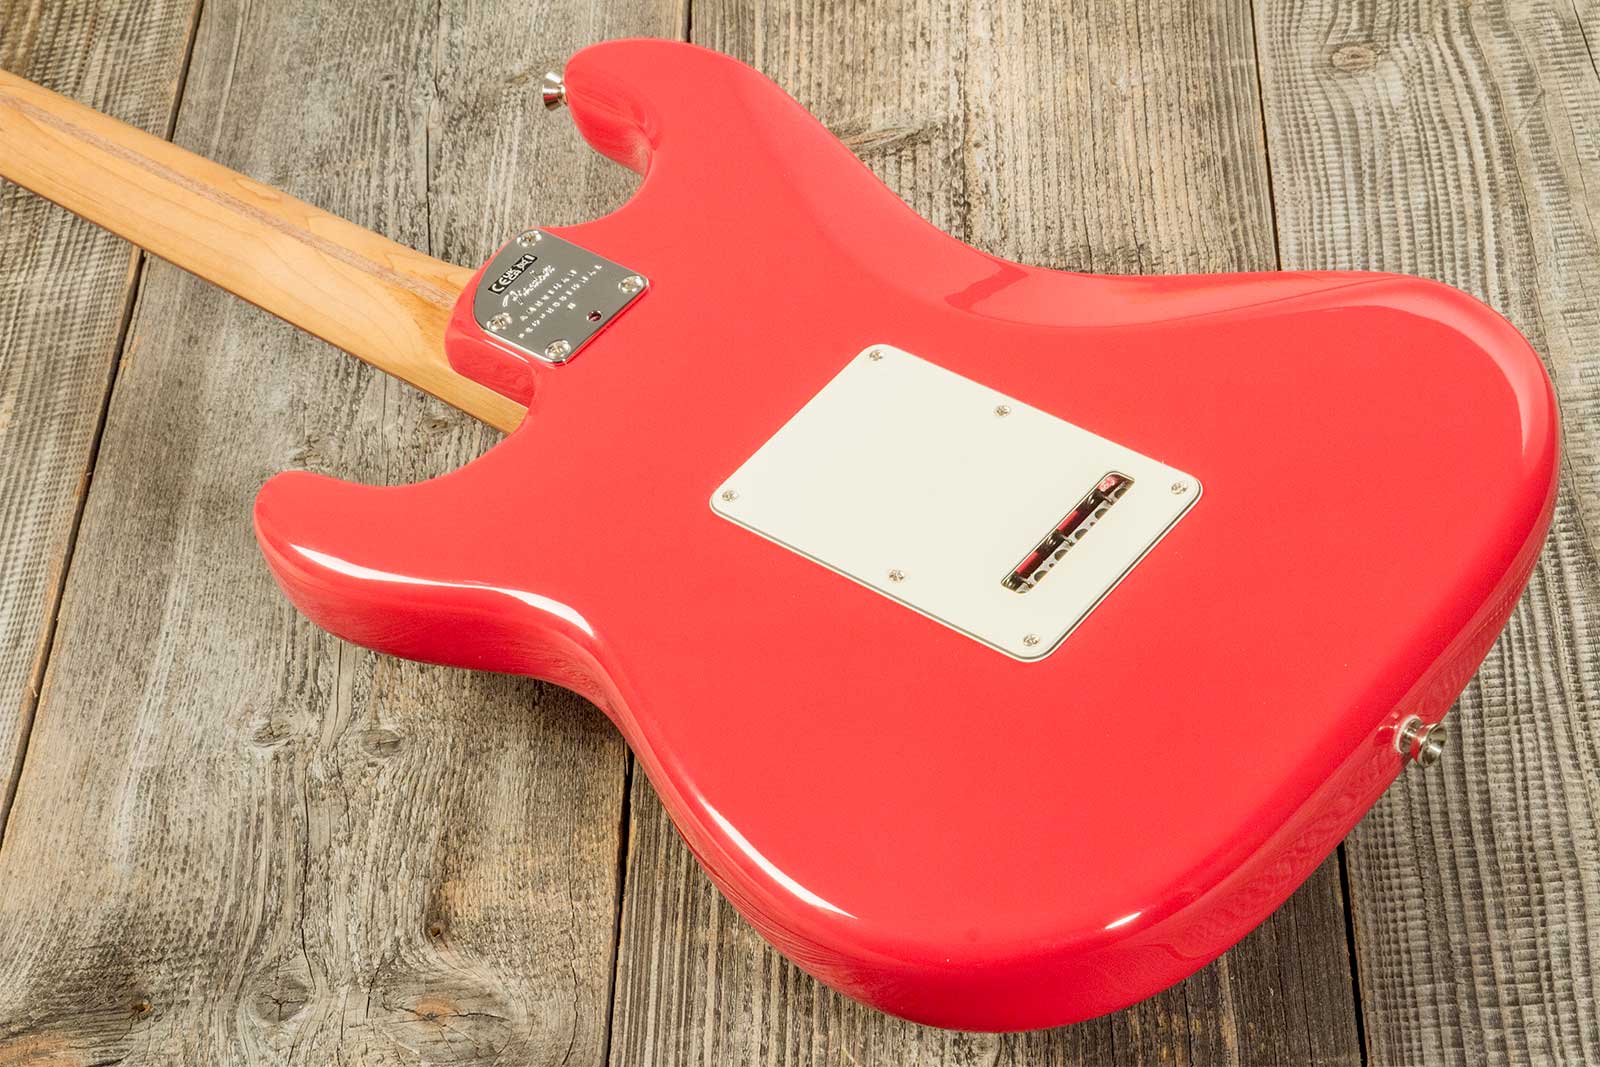 Fender Strat American Professional Ii Ltd Usa 3s Trem Rw - Fiesta Red - Elektrische gitaar in Str-vorm - Variation 7